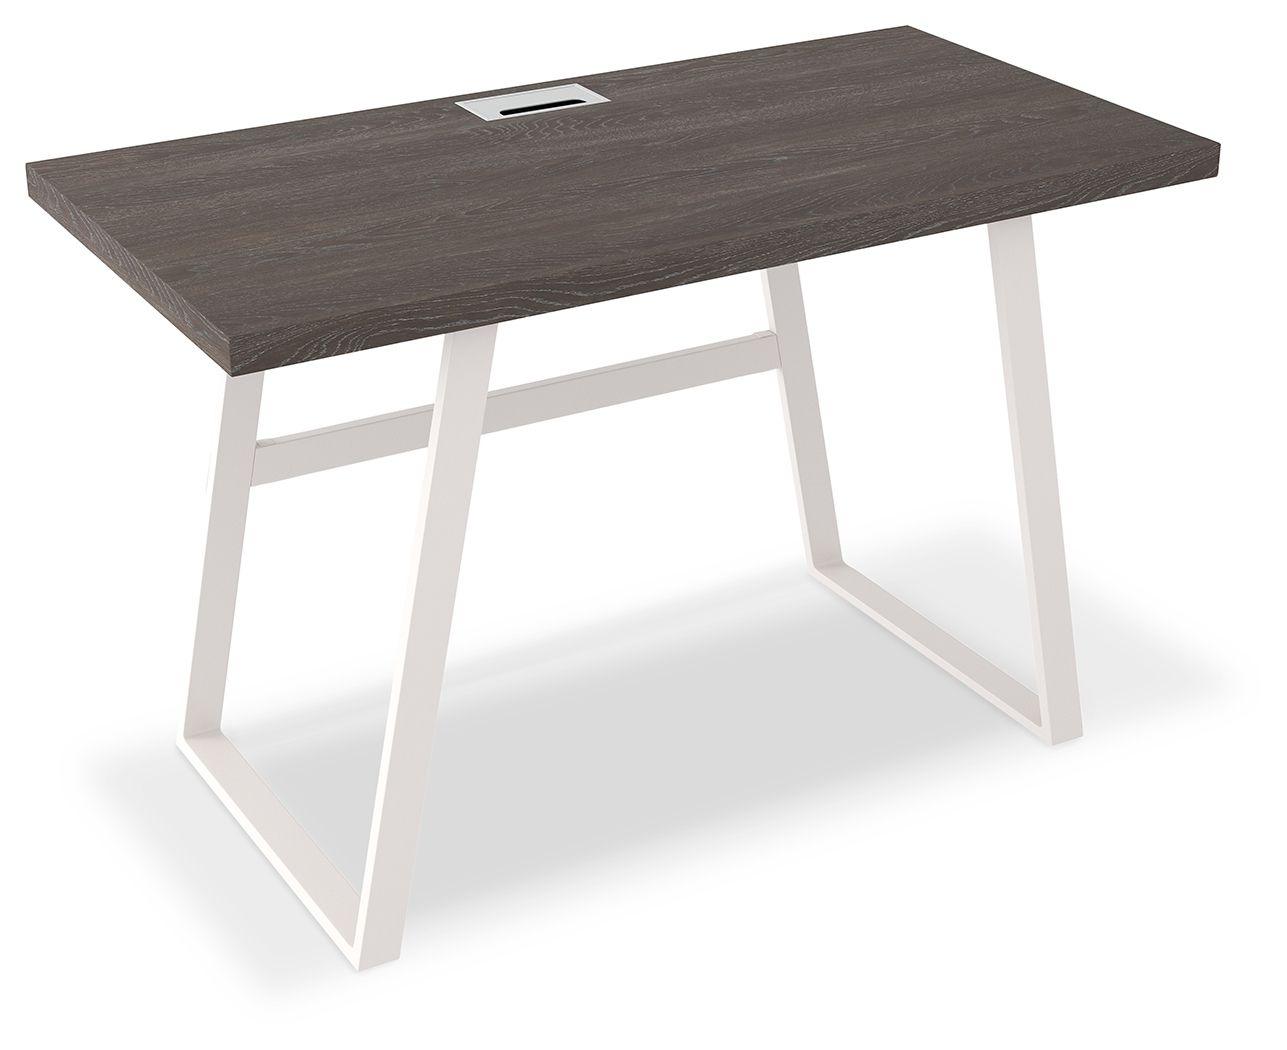 Ashley Furniture - Dorrinson - White / Black / Gray - Home Office Desk - 5th Avenue Furniture